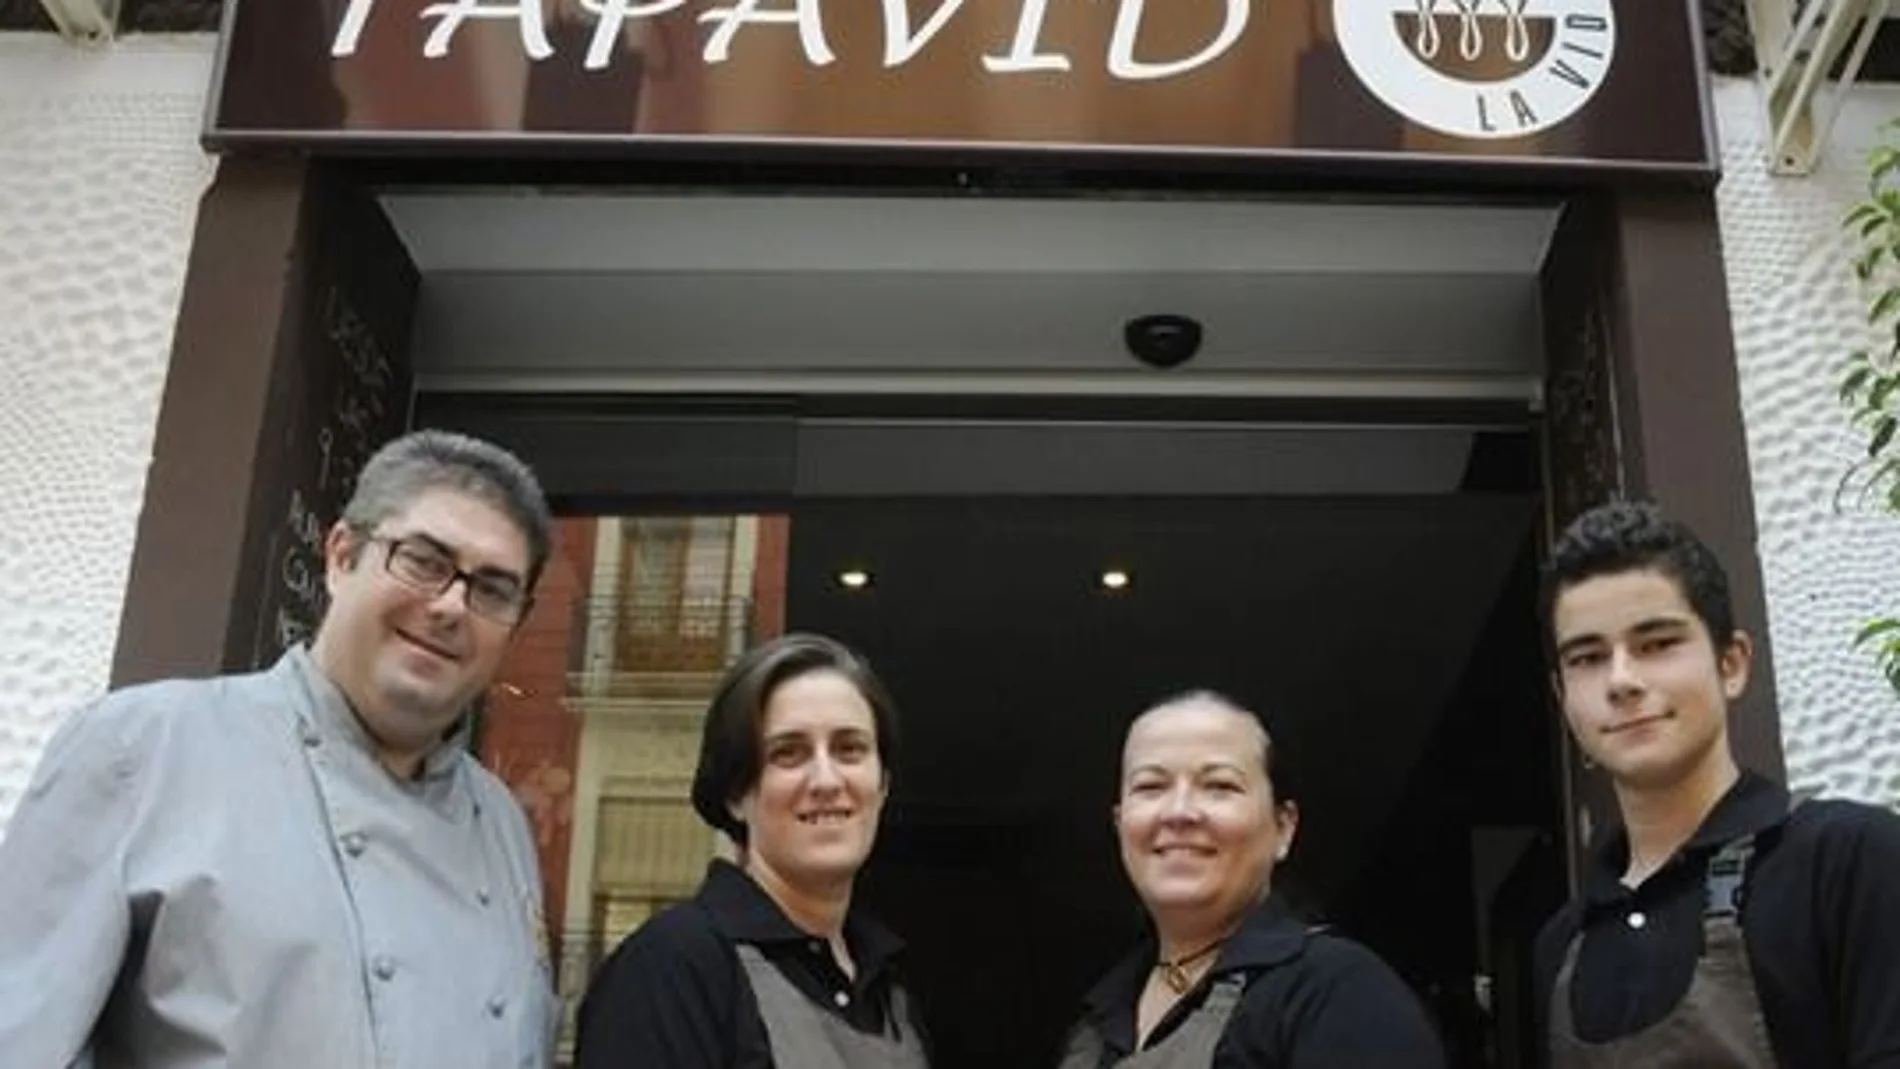 El restaurante TapaVid de Valencia ha abierto hoy para ofrecer comidas y cenas para llevar